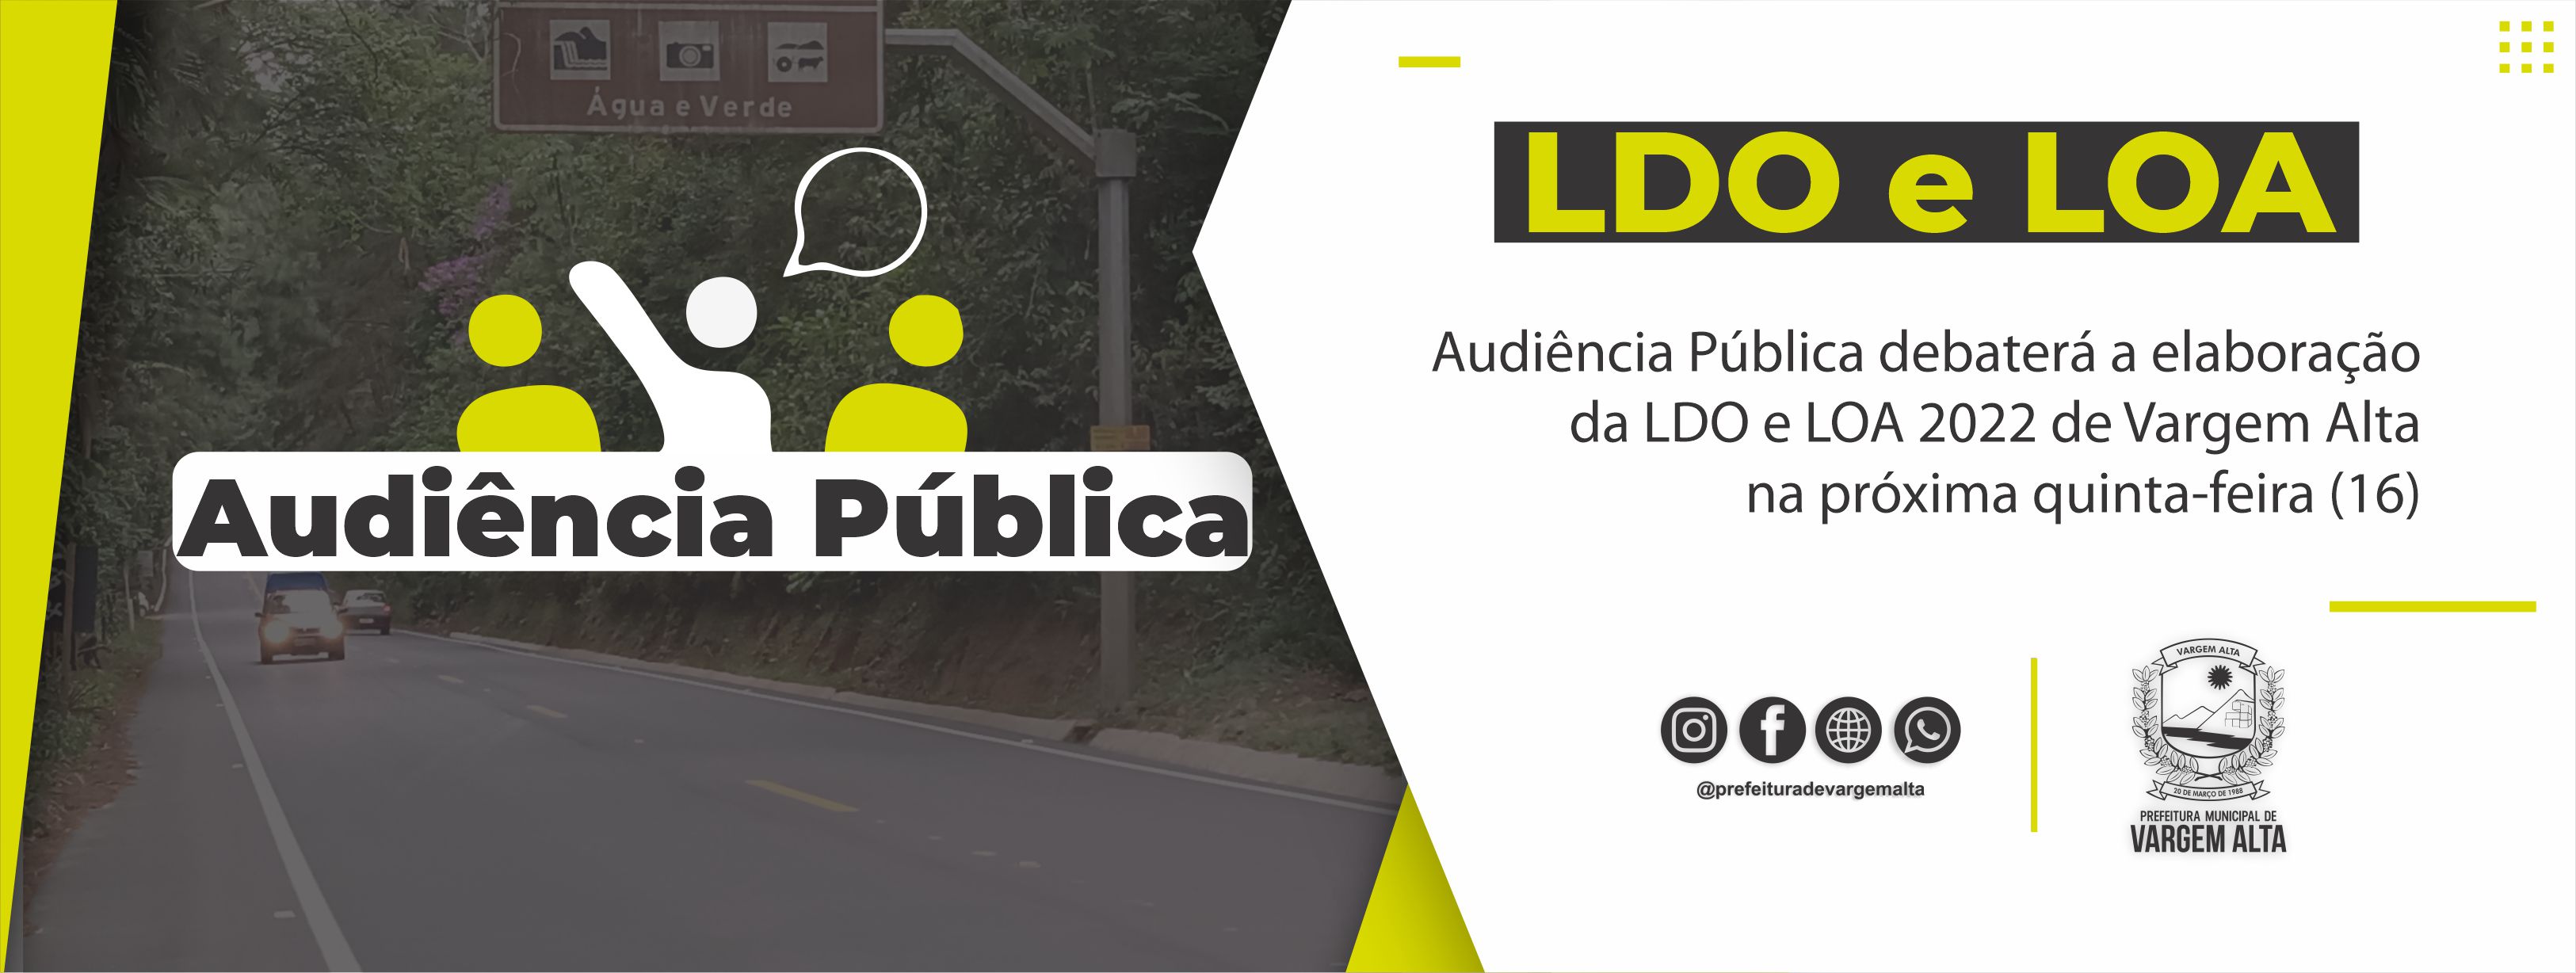 Audiência Pública debaterá a elaboração da LDO e LOA 2022 de Vargem Alta na próxima quinta-feira (16)